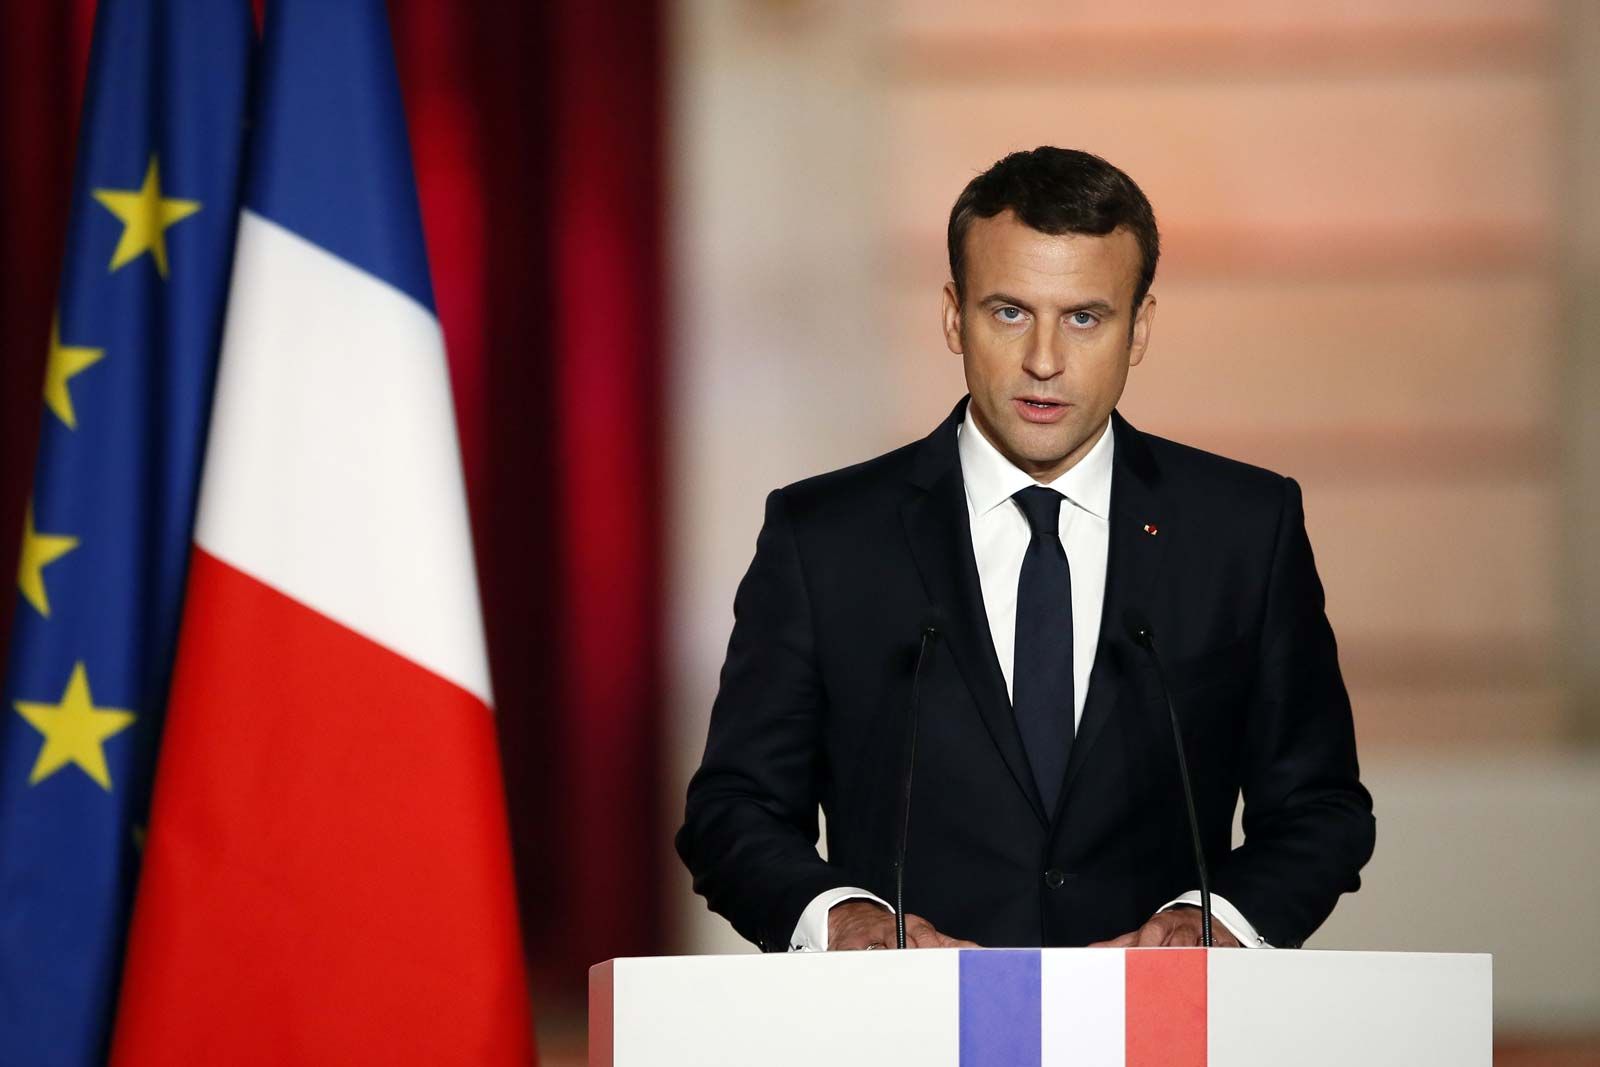 France intends to strengthen ties between Azerbaijan and EU, Macron says